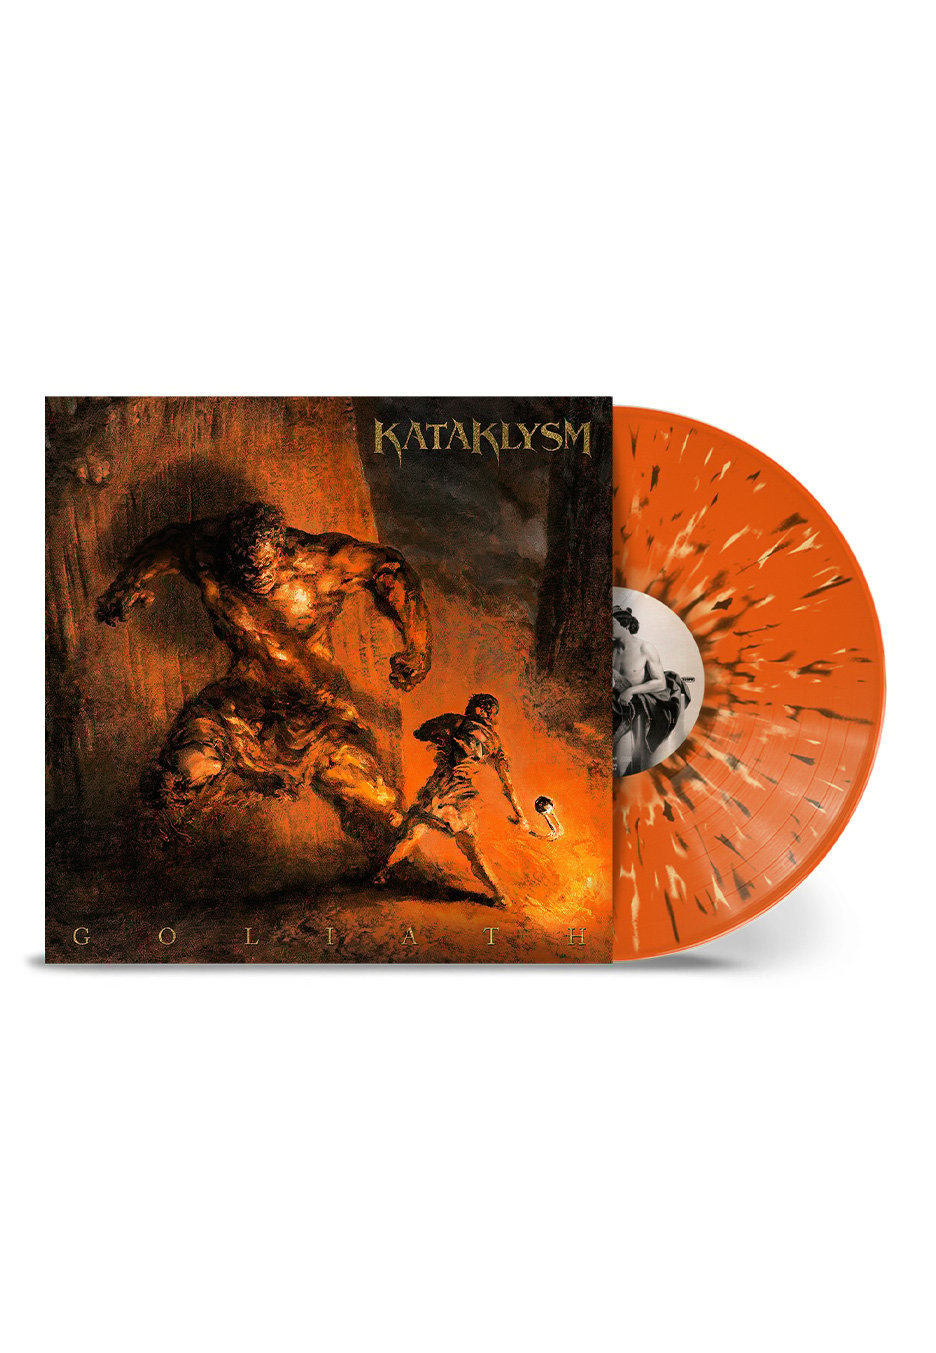 Kataklysm - Goliath Ltd. Orange Brown Bone - Splattered Vinyl